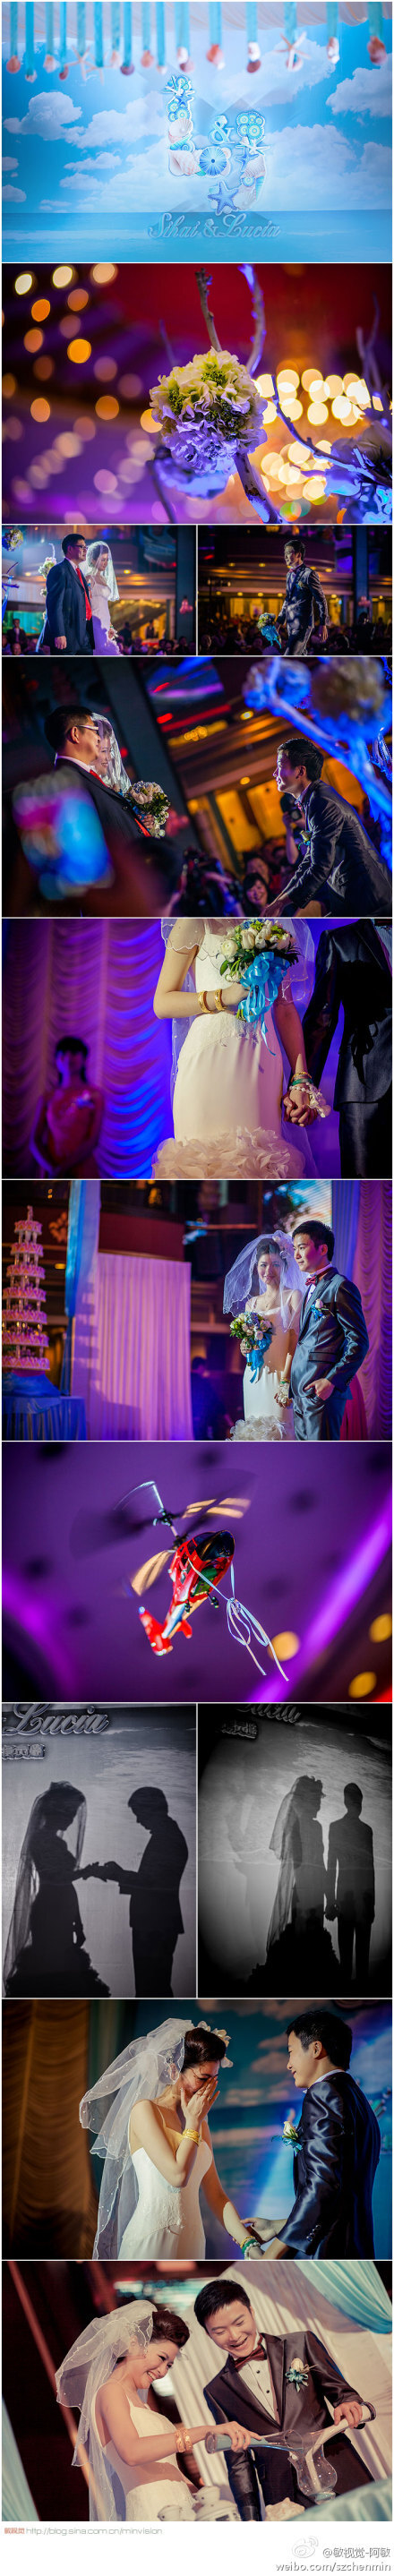 @敏视觉-阿敏 ： 婚礼仪式中，经常会遇到LED灯的麻烦，红，蓝，紫色等对数码相机都可谓是灾难。作为摄影师，我们无法选择现场的光线，我们要做到的就是尽量还原现场气氛的情况下，在拍摄和后期制作中，体现我们的专业。